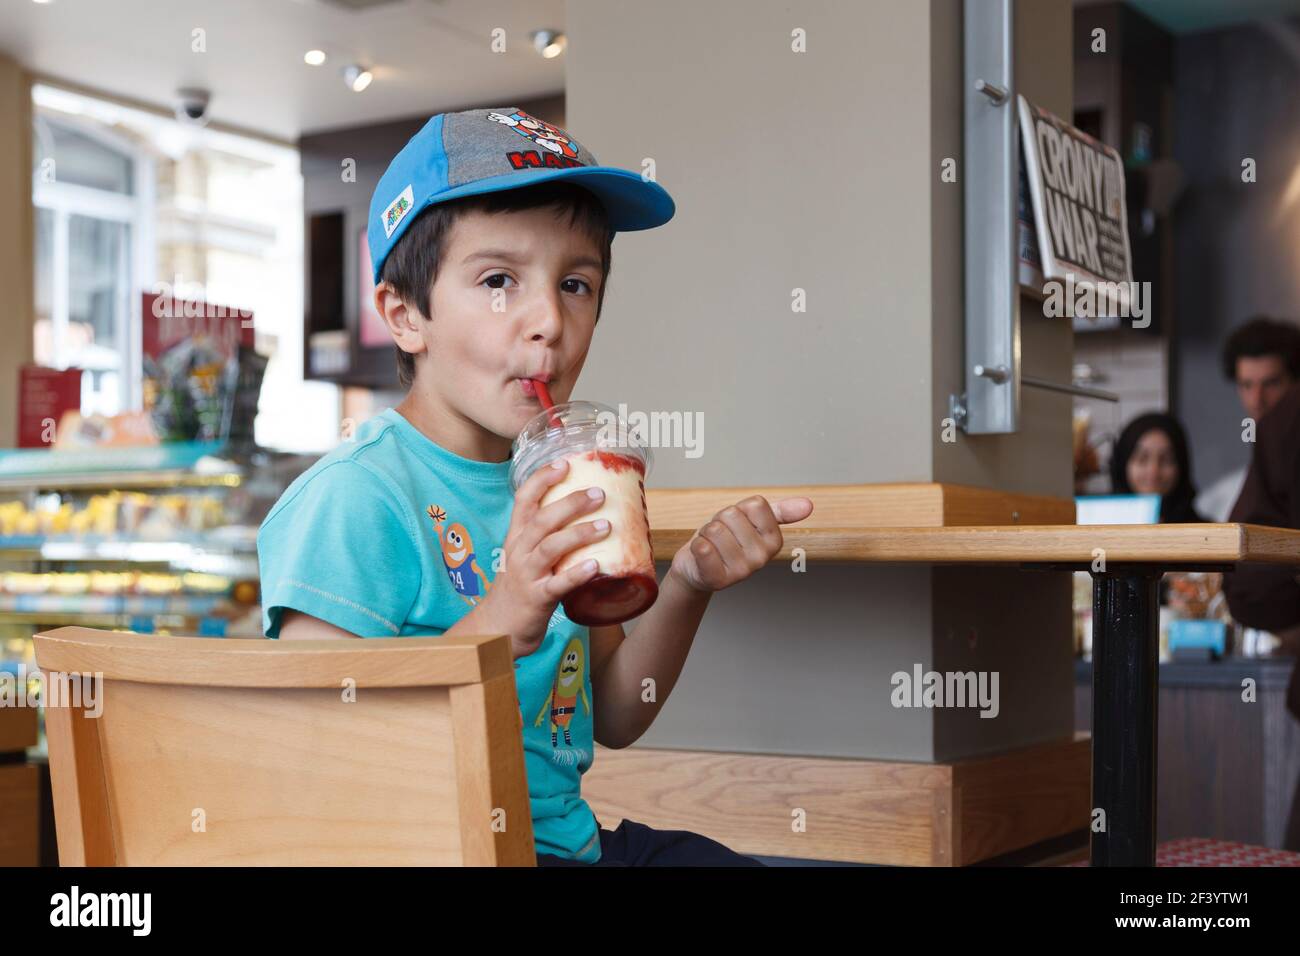 Jeune garçon, 5-6 ans, boit du lait de fraise dans des cafés, Londres, Angleterre Banque D'Images